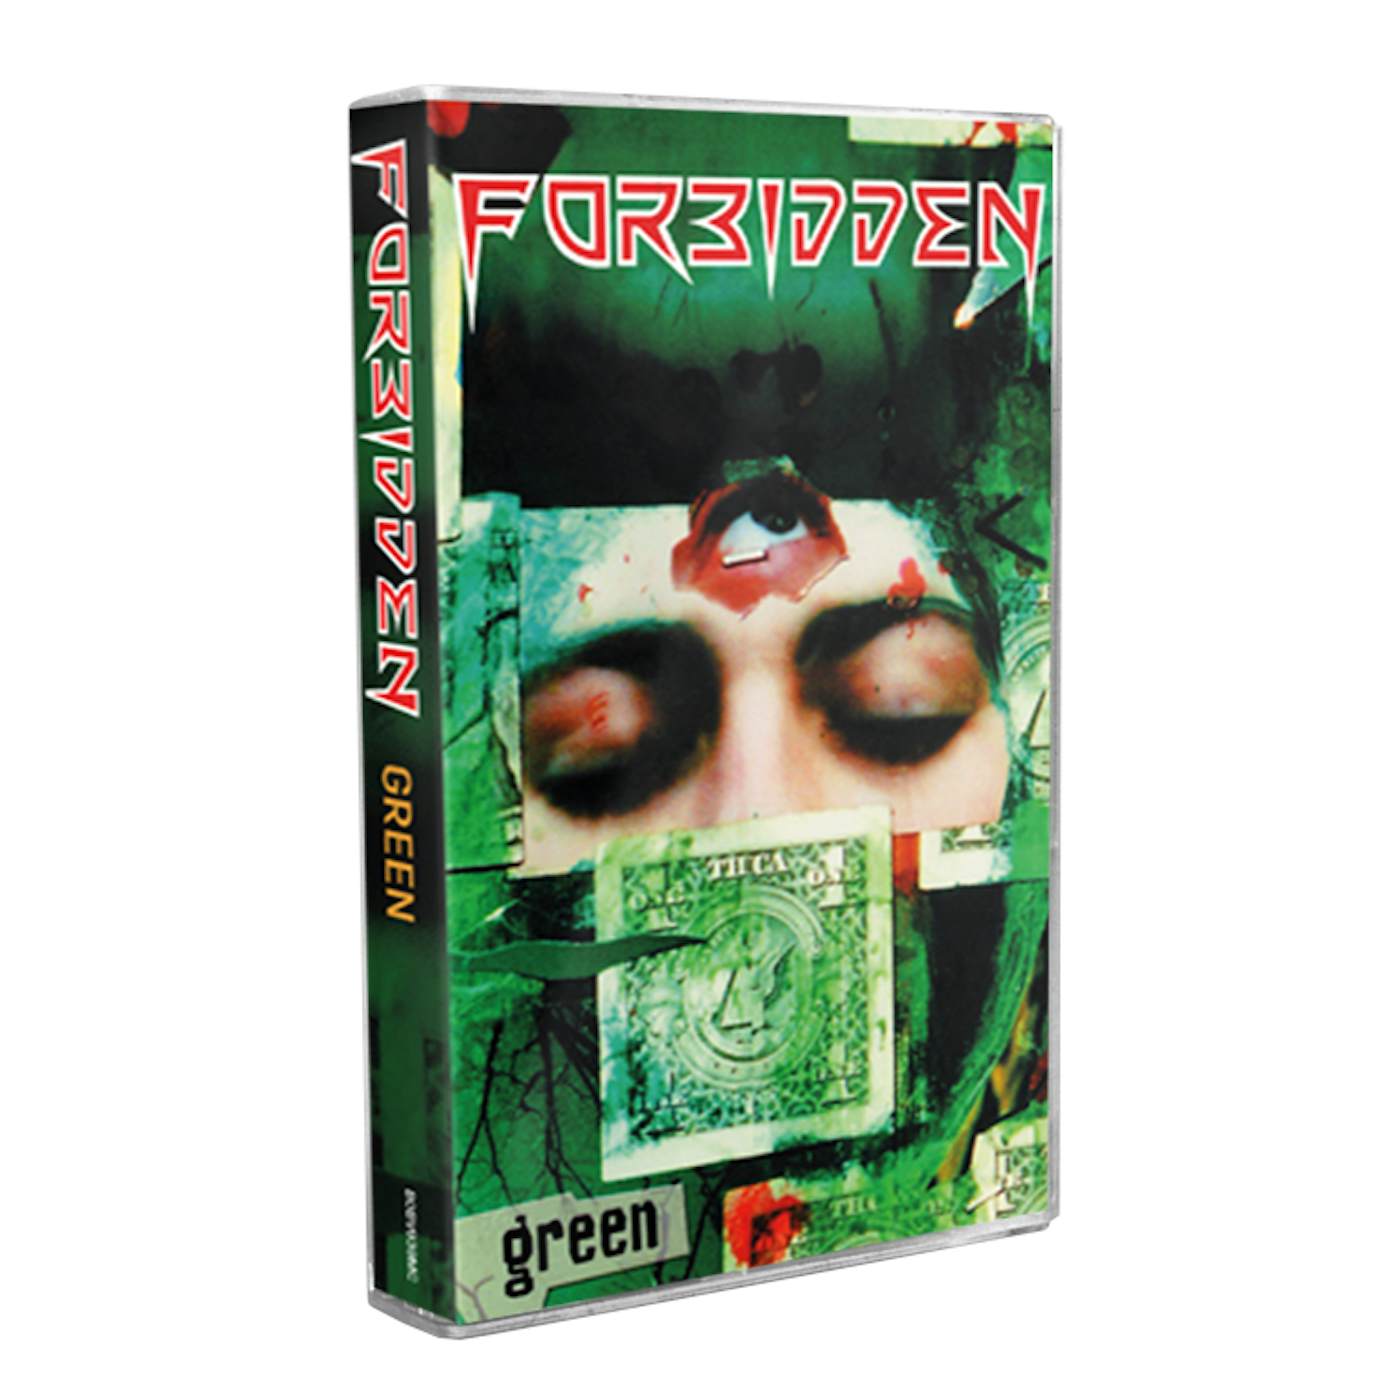 FORBIDDEN - 'Green' Cassette